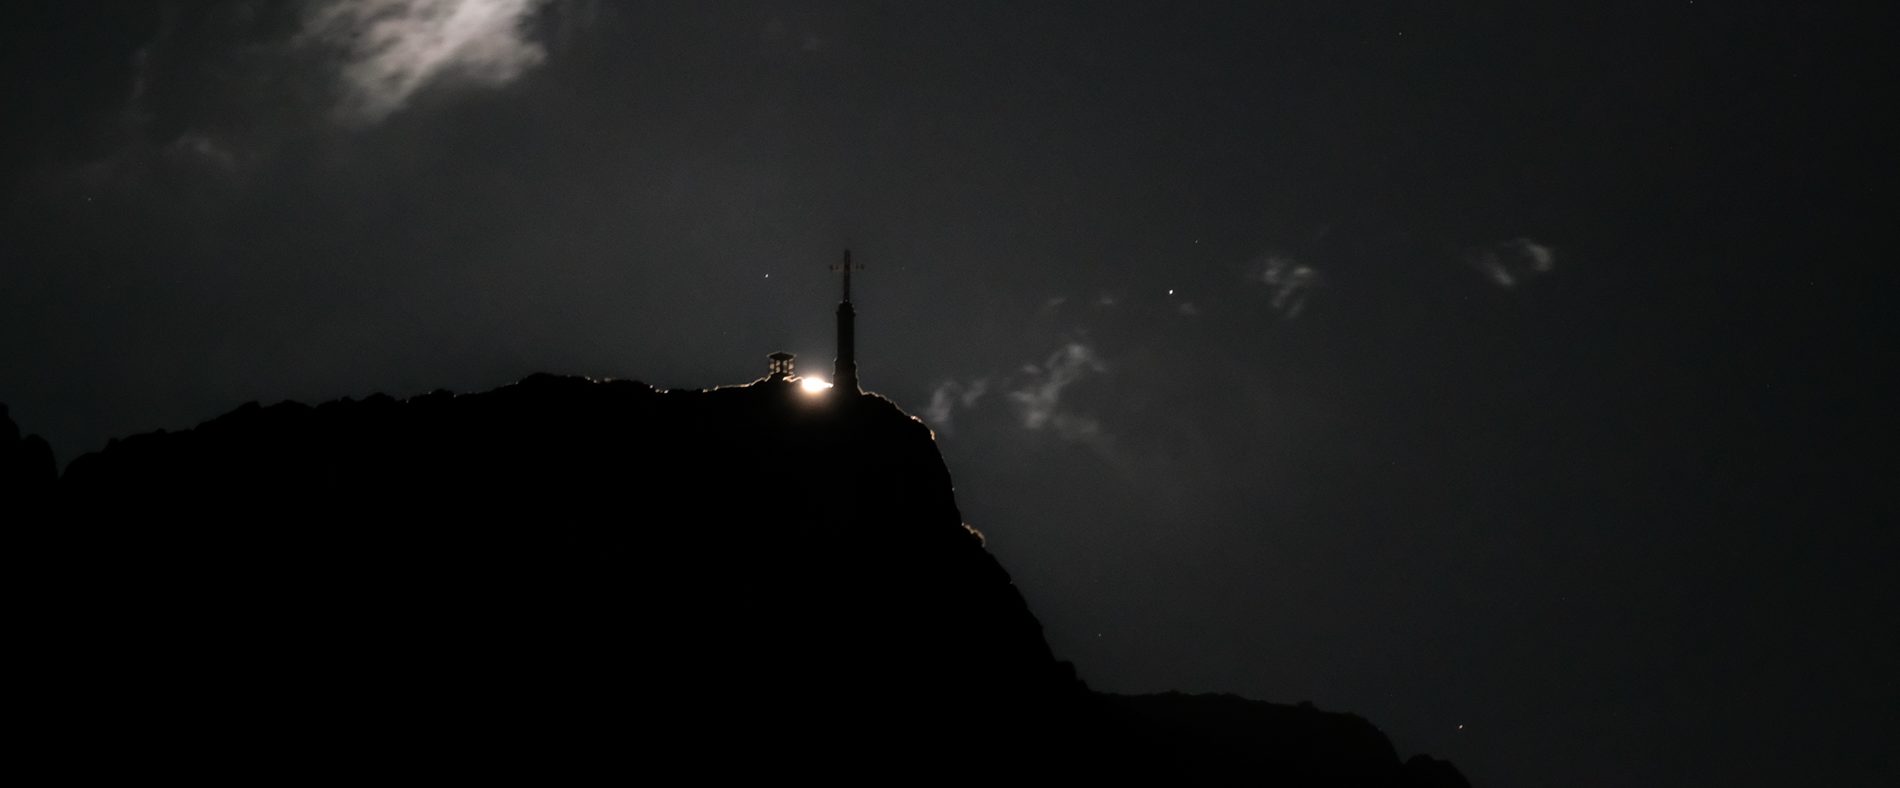 Lever de lune Sainte-Victoire - Trame noire @Cerema